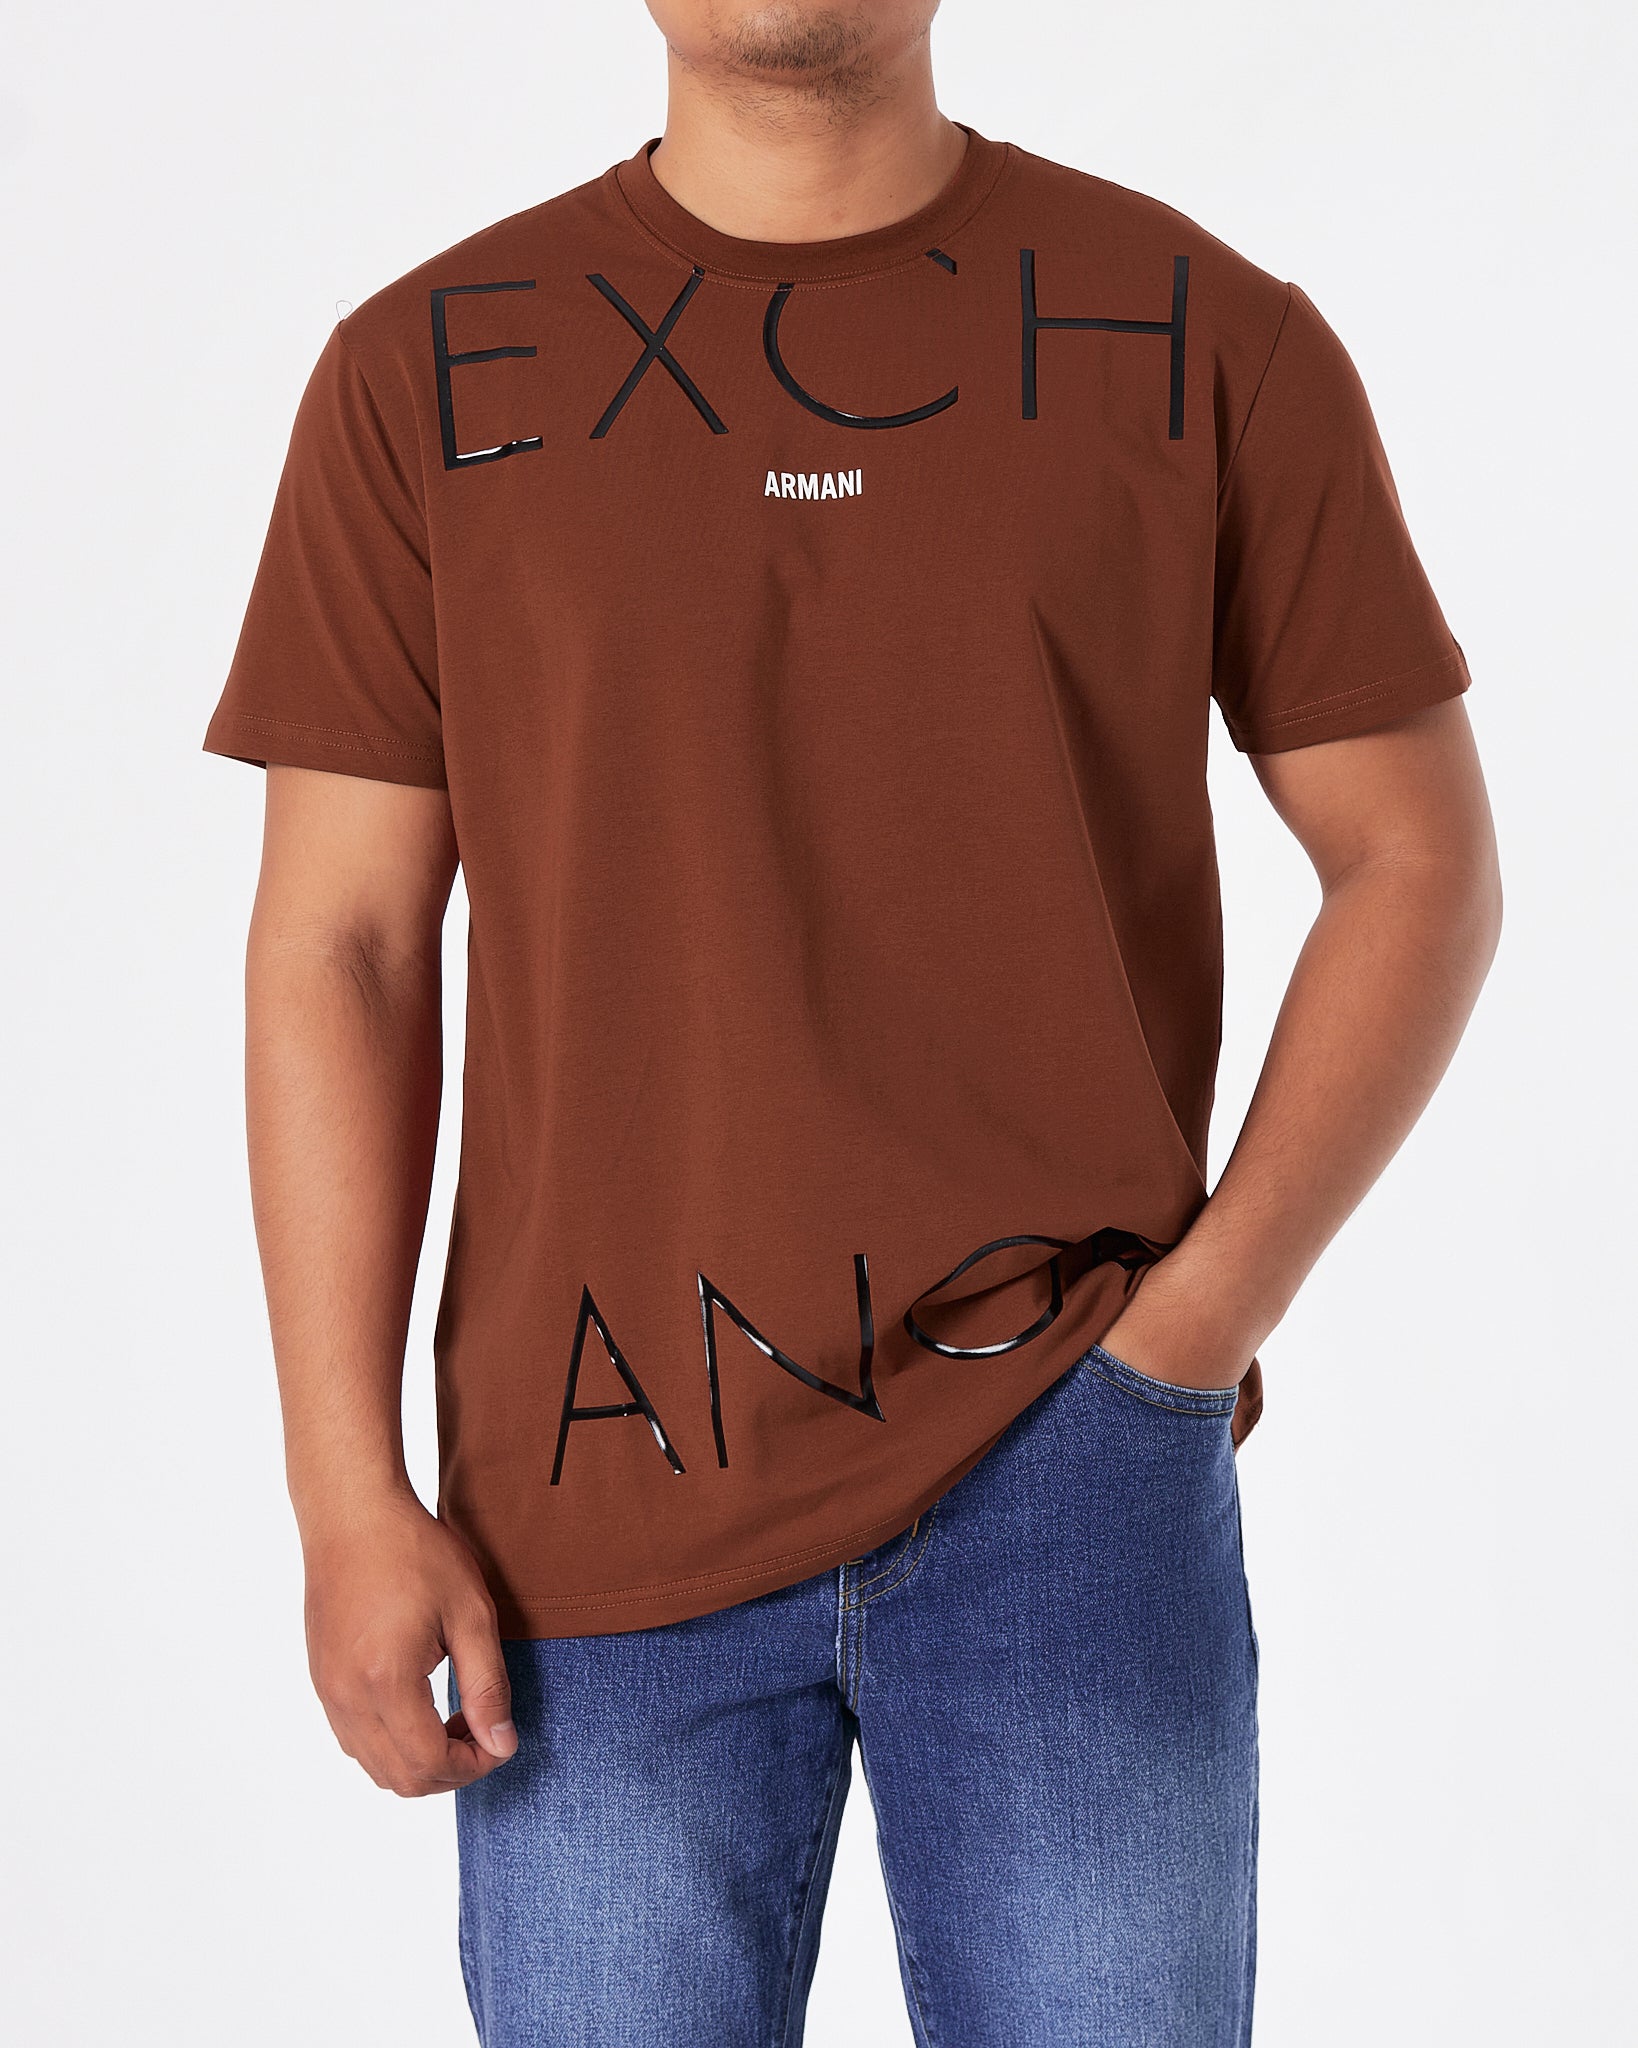 ARM Exchange Logo Printed Men Red T-Shirt 15.90